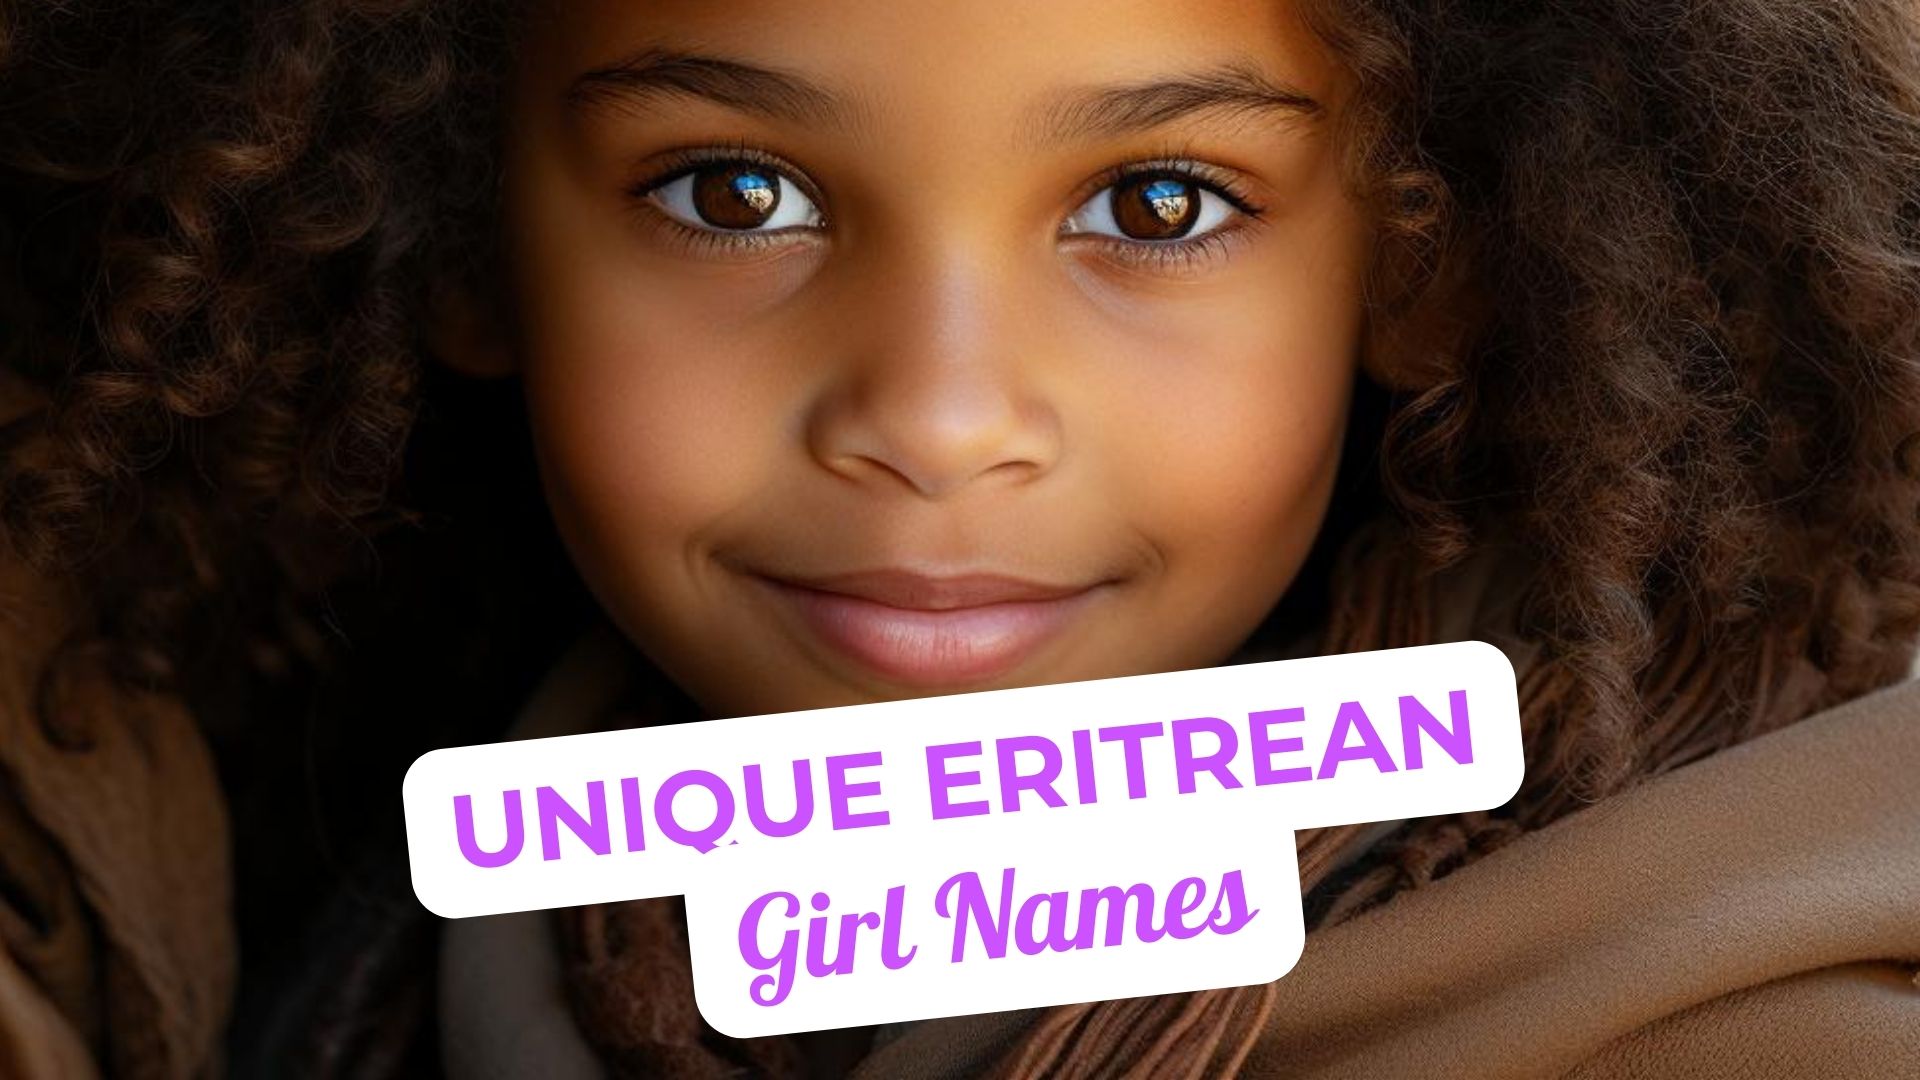 Unique Eritrean Girl Names for Newborns